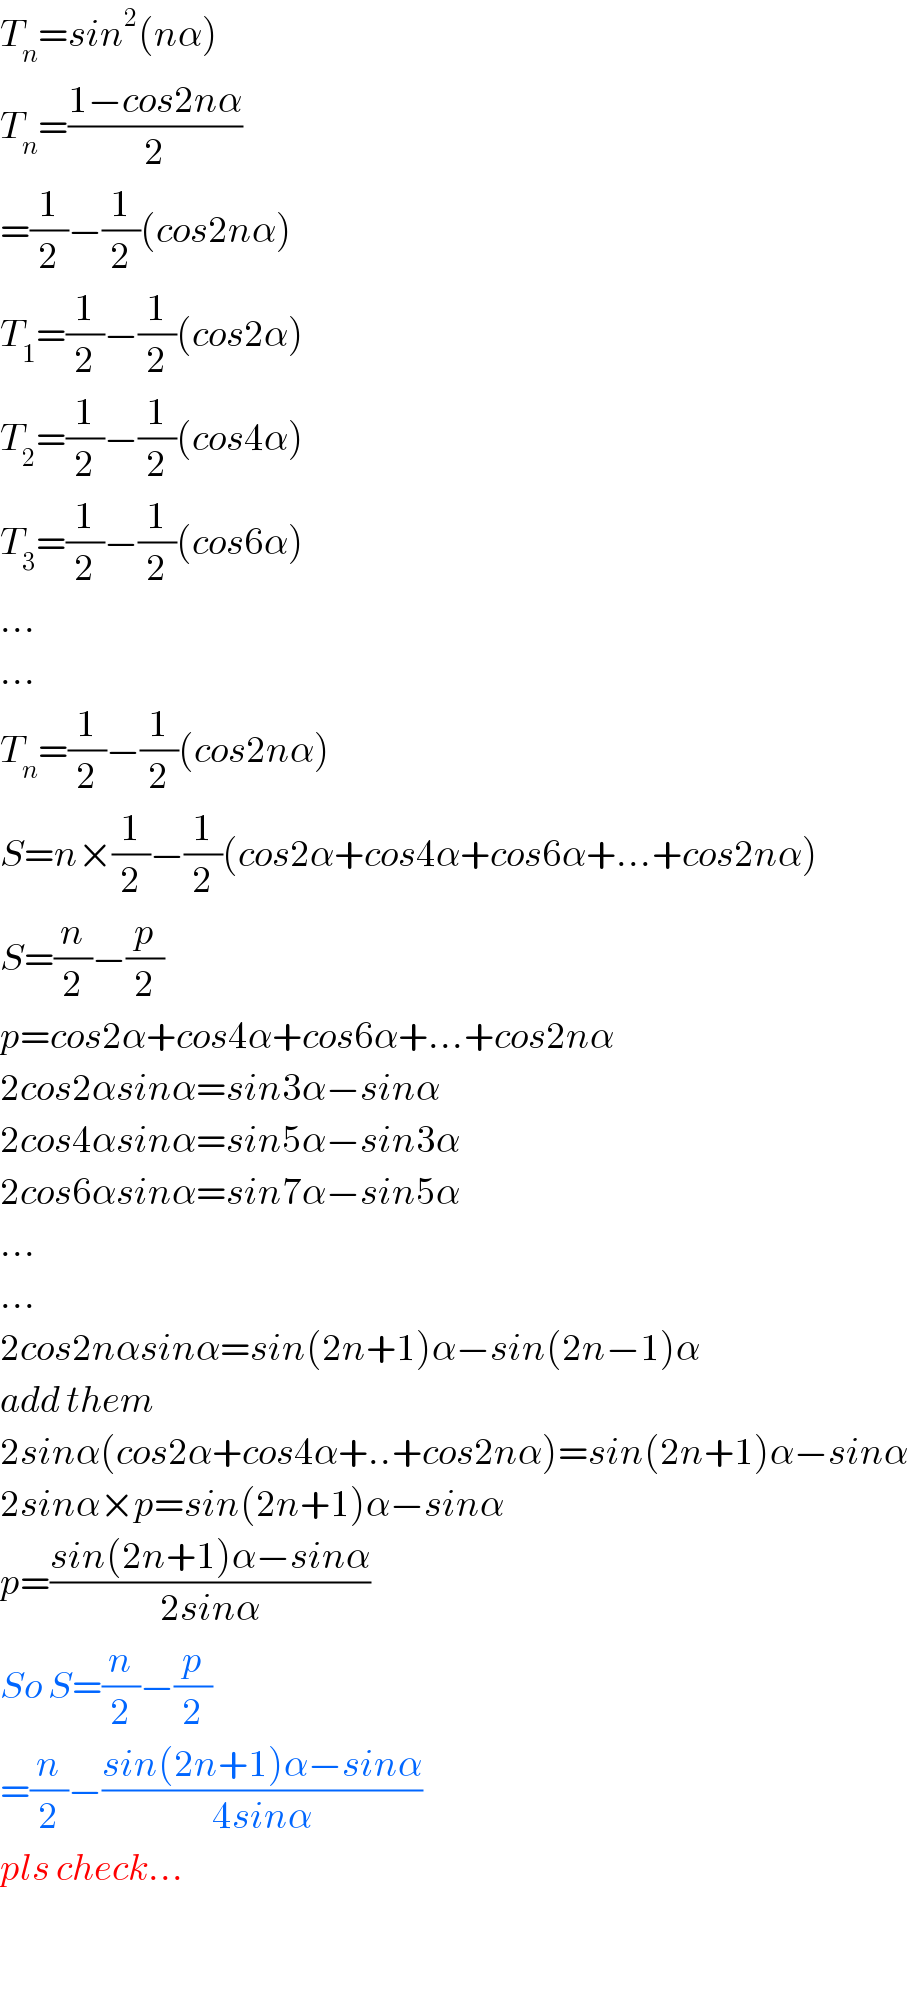 T_n =sin^2 (nα)  T_n =((1−cos2nα)/2)  =(1/2)−(1/2)(cos2nα)  T_1 =(1/2)−(1/2)(cos2α)  T_2 =(1/2)−(1/2)(cos4α)  T_3 =(1/2)−(1/2)(cos6α)  ...  ...  T_n =(1/2)−(1/2)(cos2nα)  S=n×(1/2)−(1/2)(cos2α+cos4α+cos6α+...+cos2nα)  S=(n/2)−(p/2)  p=cos2α+cos4α+cos6α+...+cos2nα  2cos2αsinα=sin3α−sinα  2cos4αsinα=sin5α−sin3α  2cos6αsinα=sin7α−sin5α  ...  ...  2cos2nαsinα=sin(2n+1)α−sin(2n−1)α  add them  2sinα(cos2α+cos4α+..+cos2nα)=sin(2n+1)α−sinα  2sinα×p=sin(2n+1)α−sinα  p=((sin(2n+1)α−sinα)/(2sinα))  So S=(n/2)−(p/2)  =(n/2)−((sin(2n+1)α−sinα)/(4sinα))  pls check...    